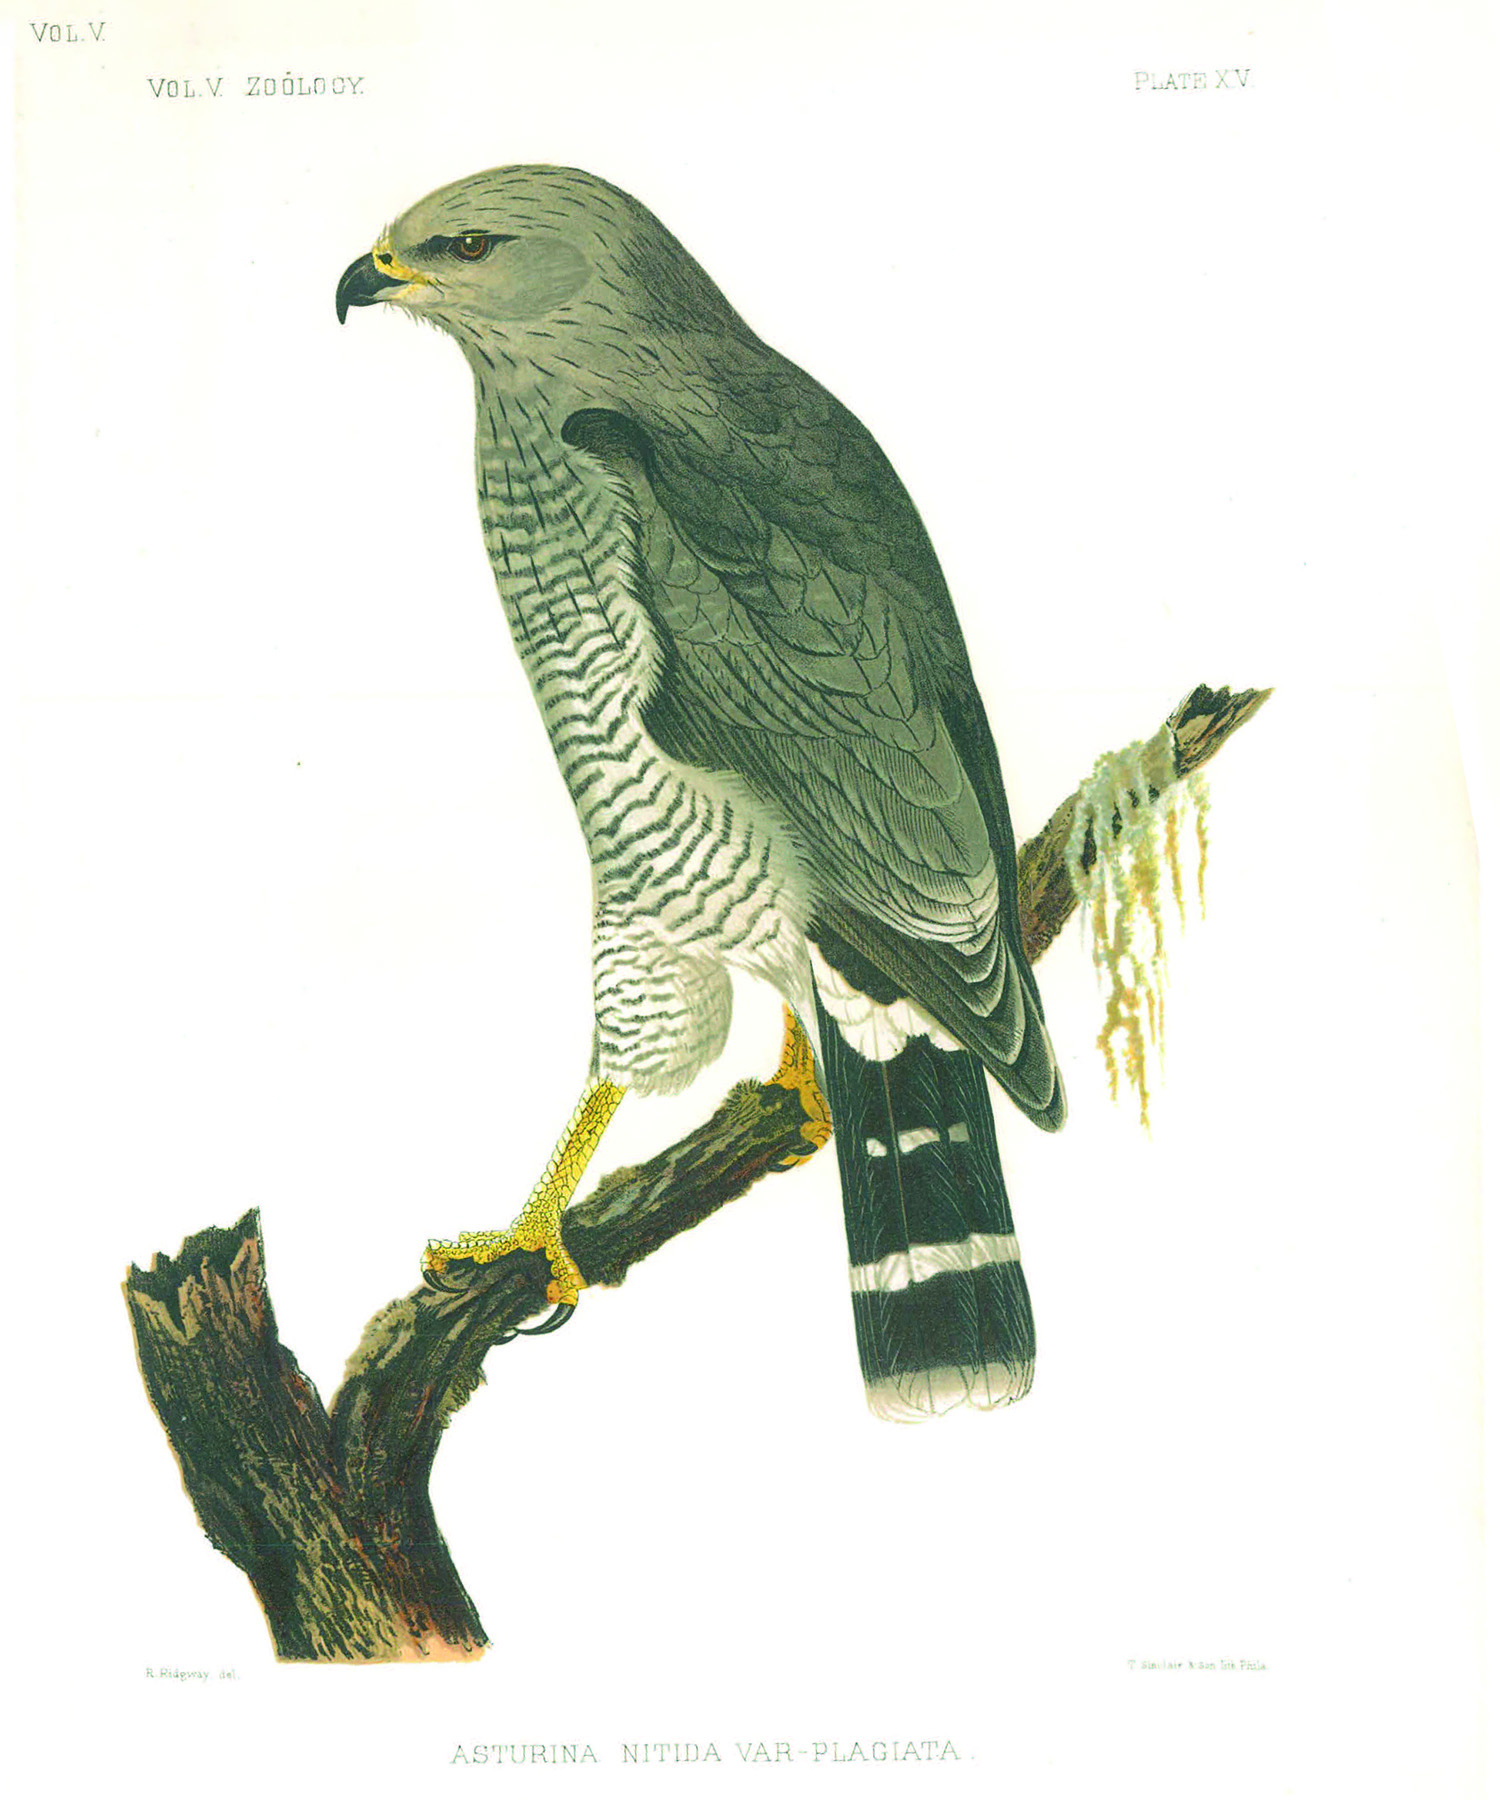 Sketch of a falcon on a brach